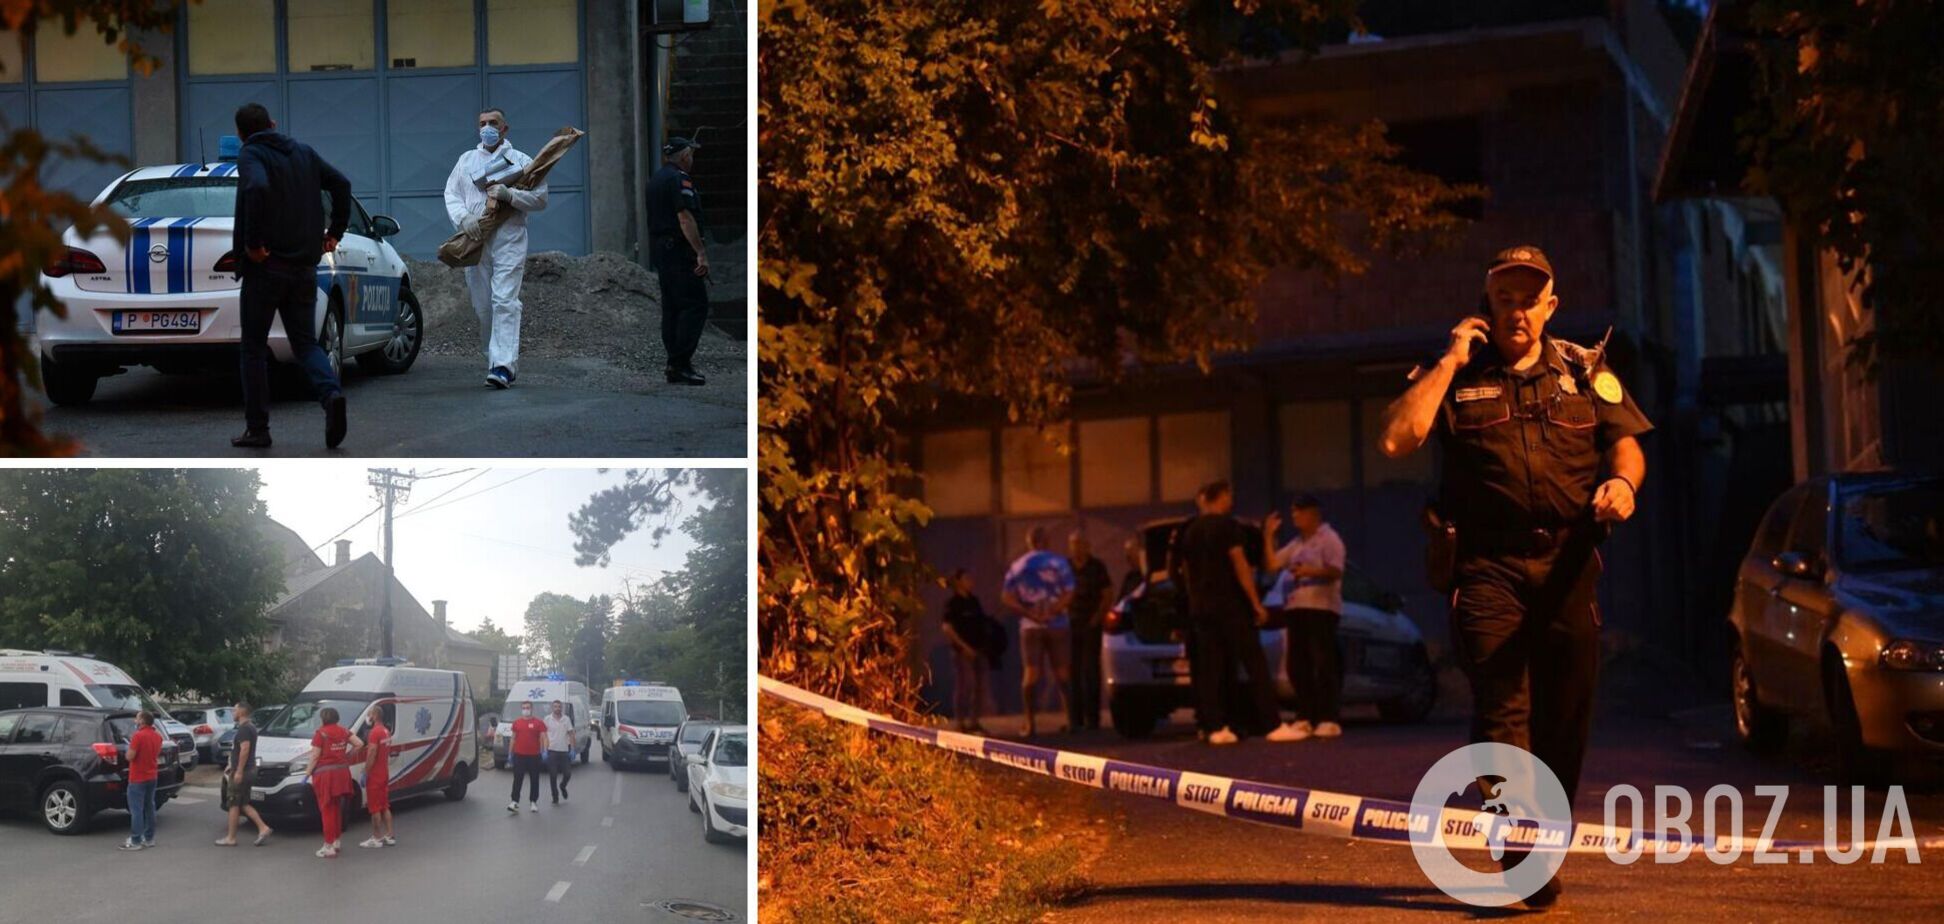 11 погибших, среди них дети: в Черногории мужчина устроил стрельбу после семейной ссоры